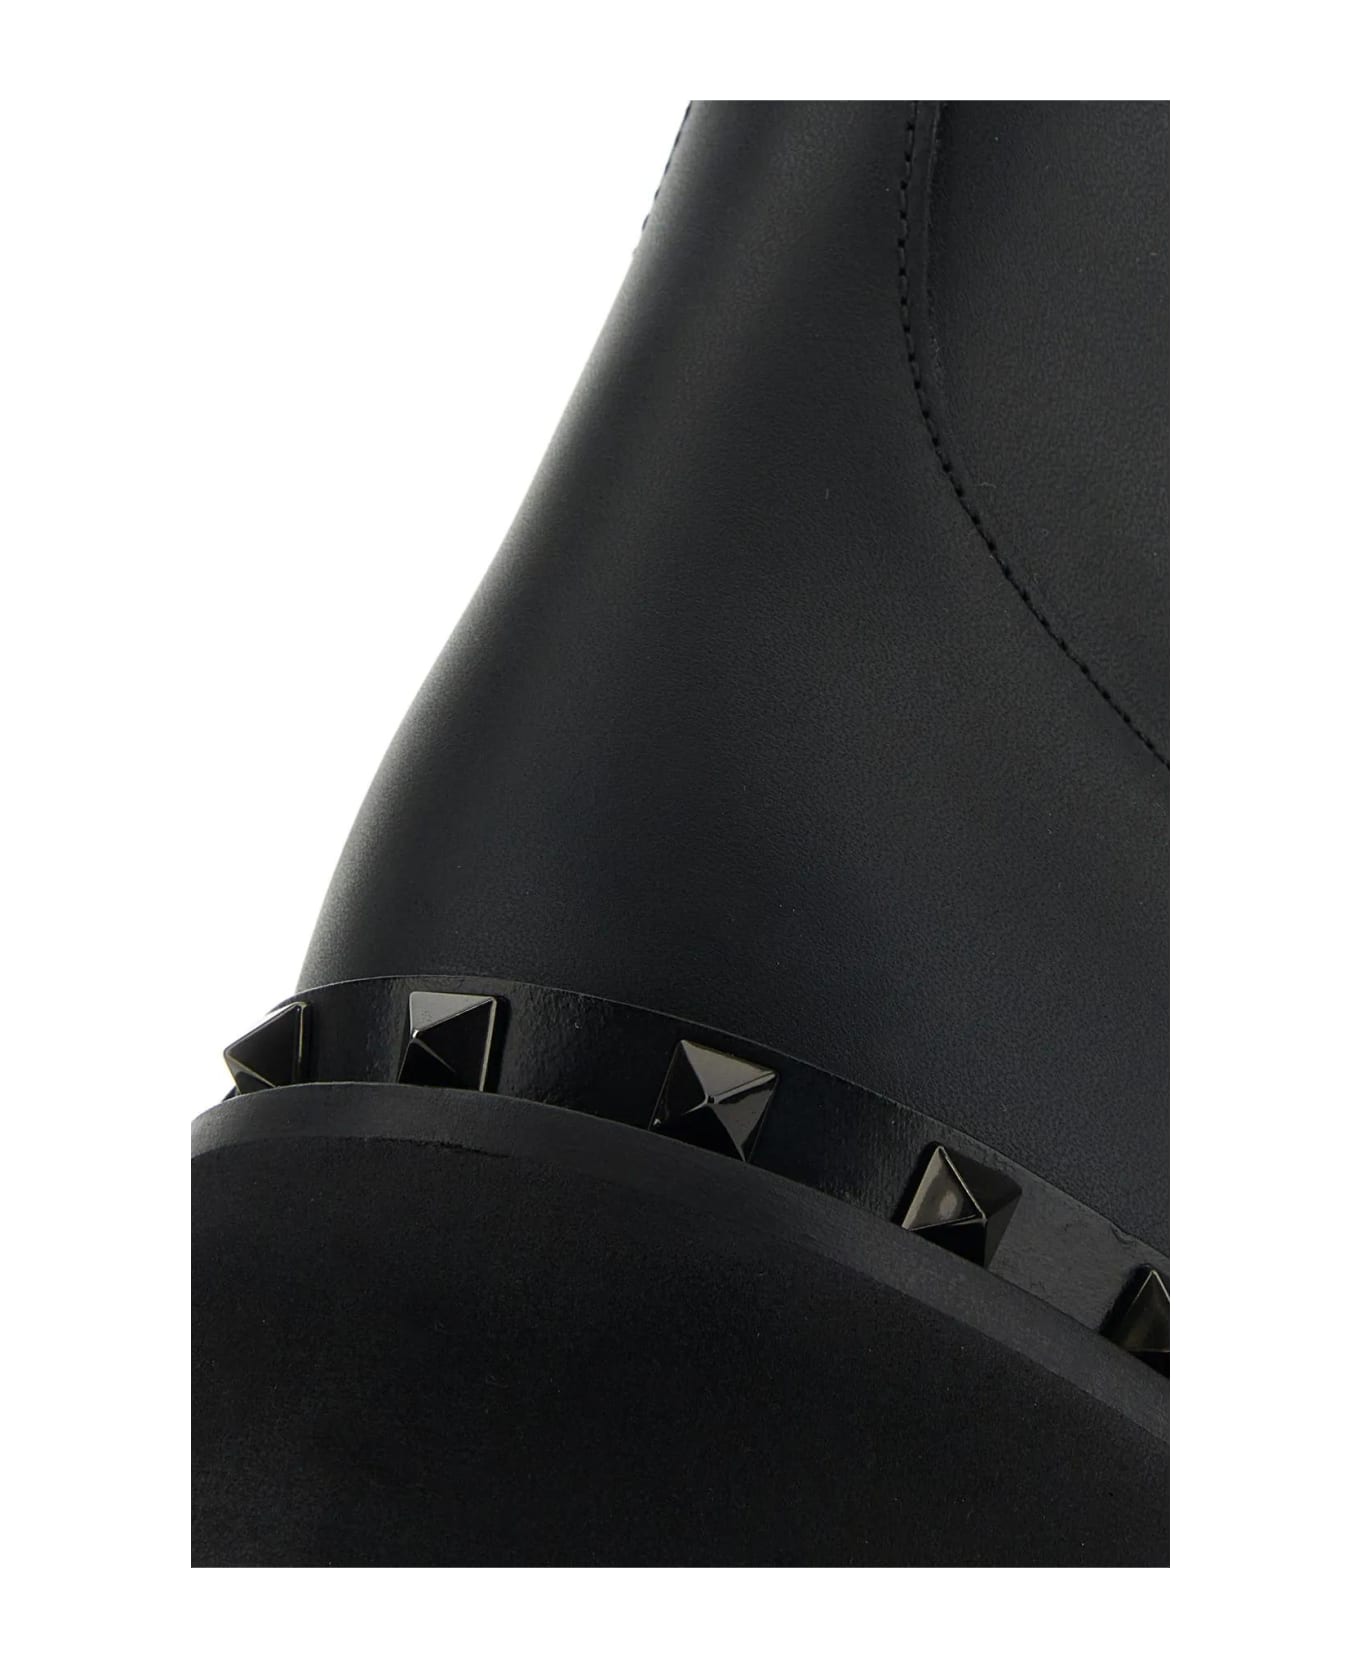 Valentino Garavani Black Leather Rockstud Ankle Boots - BLACK